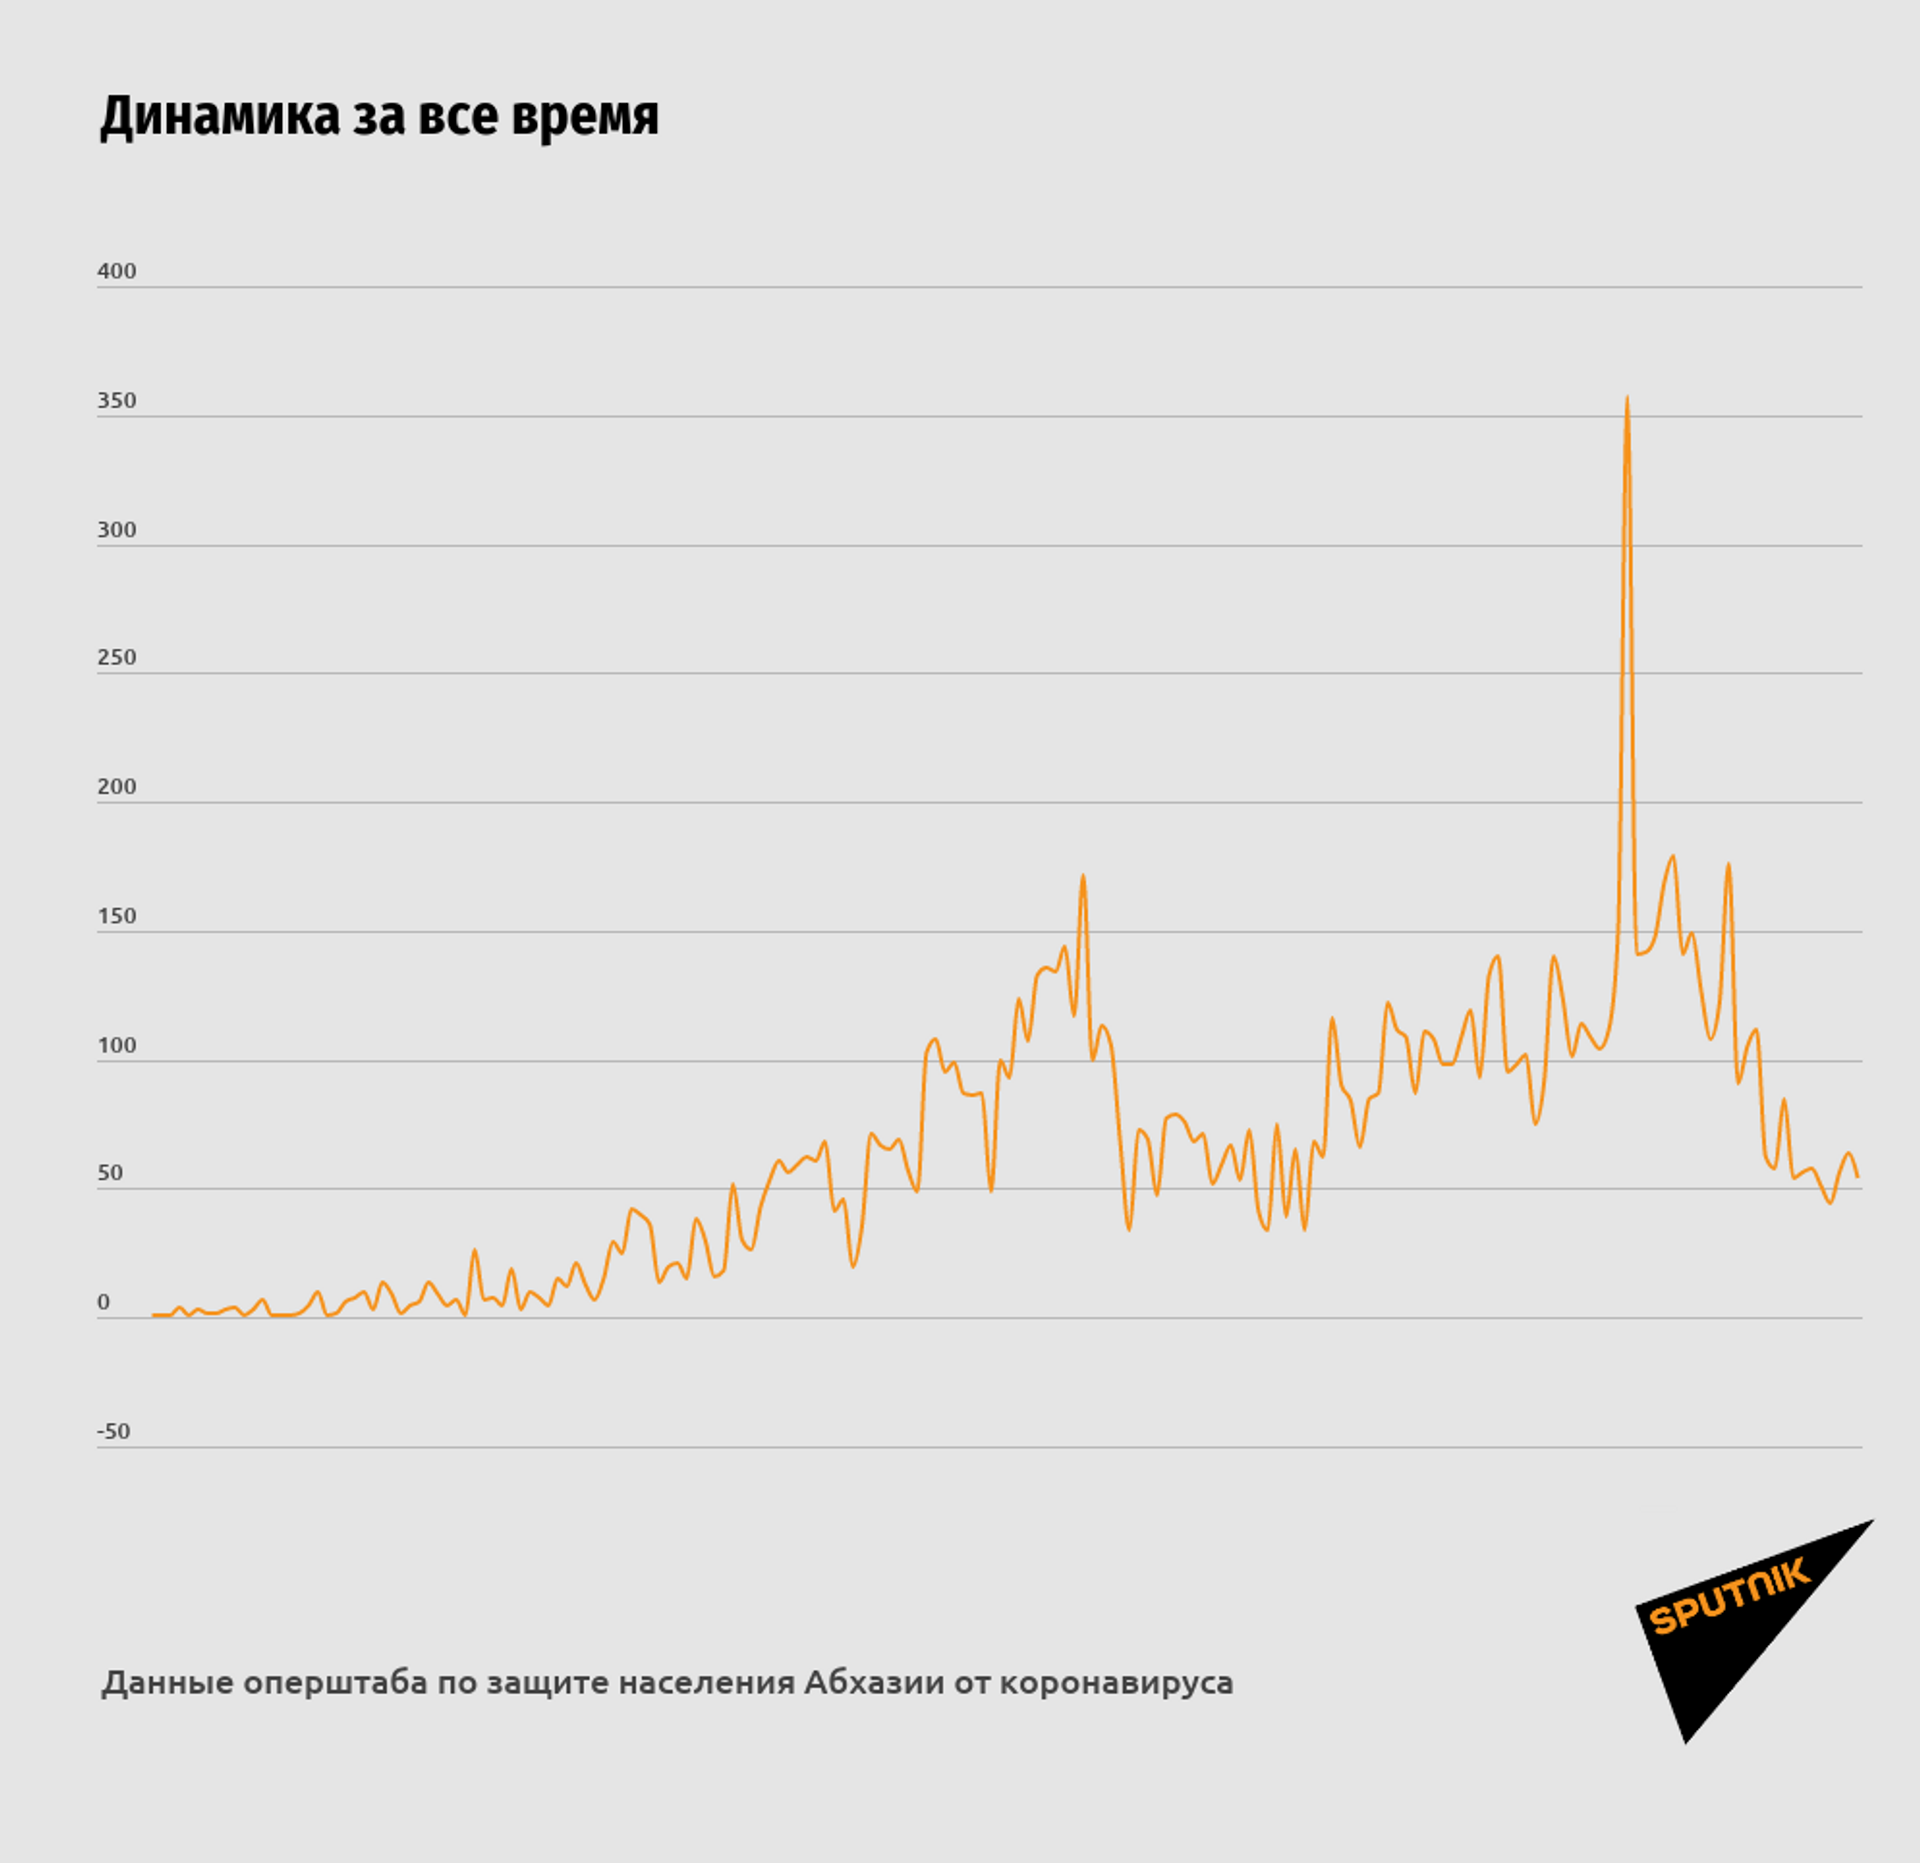 Число смертей от COVID-19 в Абхазии достигло 180 - Sputnik Абхазия, 1920, 05.02.2021